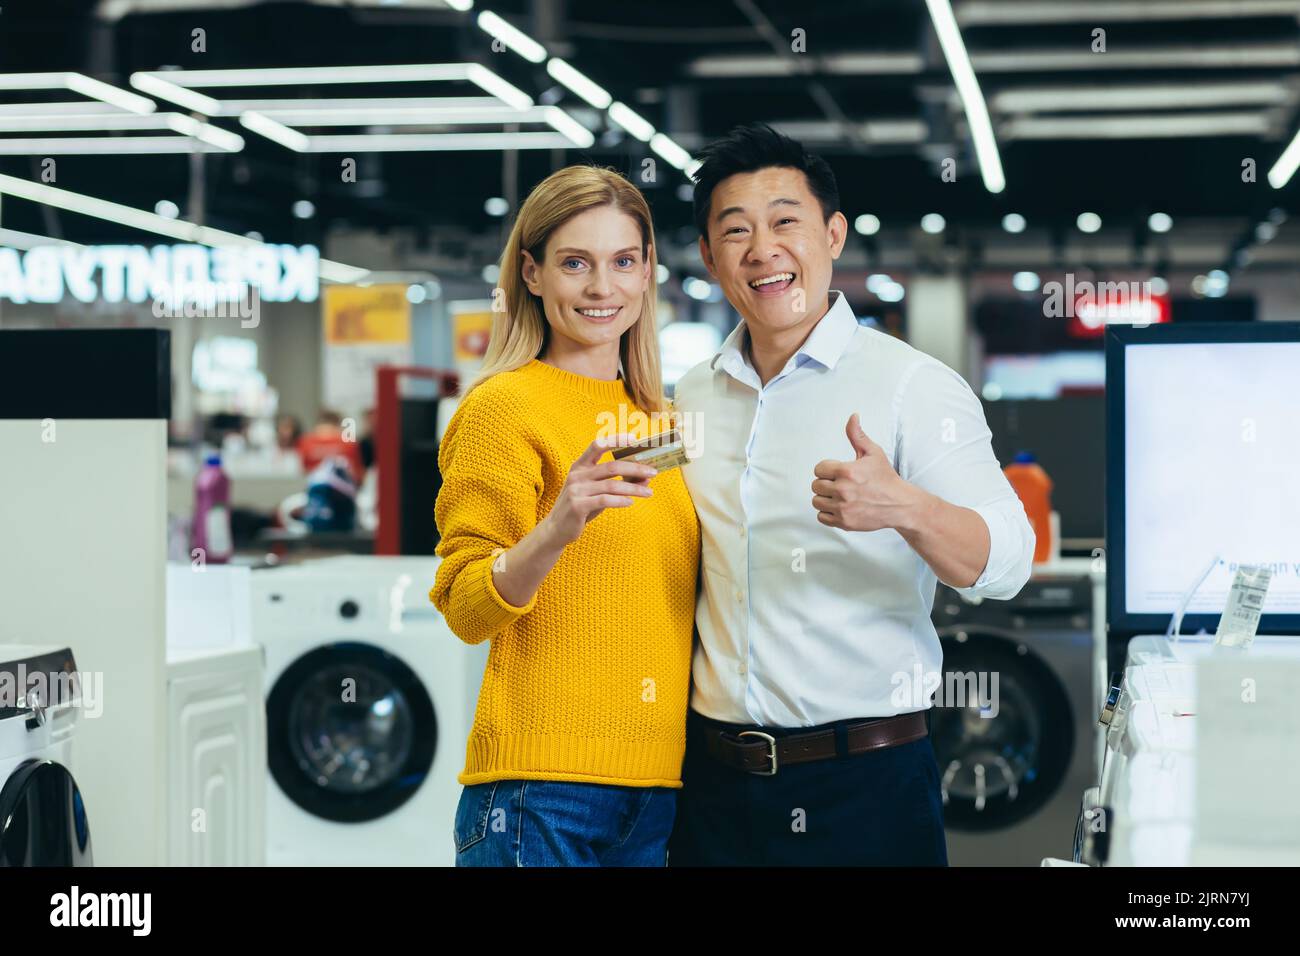 Porträt eines vielfältigen Familienpaares Asiatische Männer und Frauen, die in Supermärkten, Elektronik und Haushaltsgeräten einkaufen, die Kamera betrachten und lächeln, zufrieden mit Bankkreditkarte Stockfoto